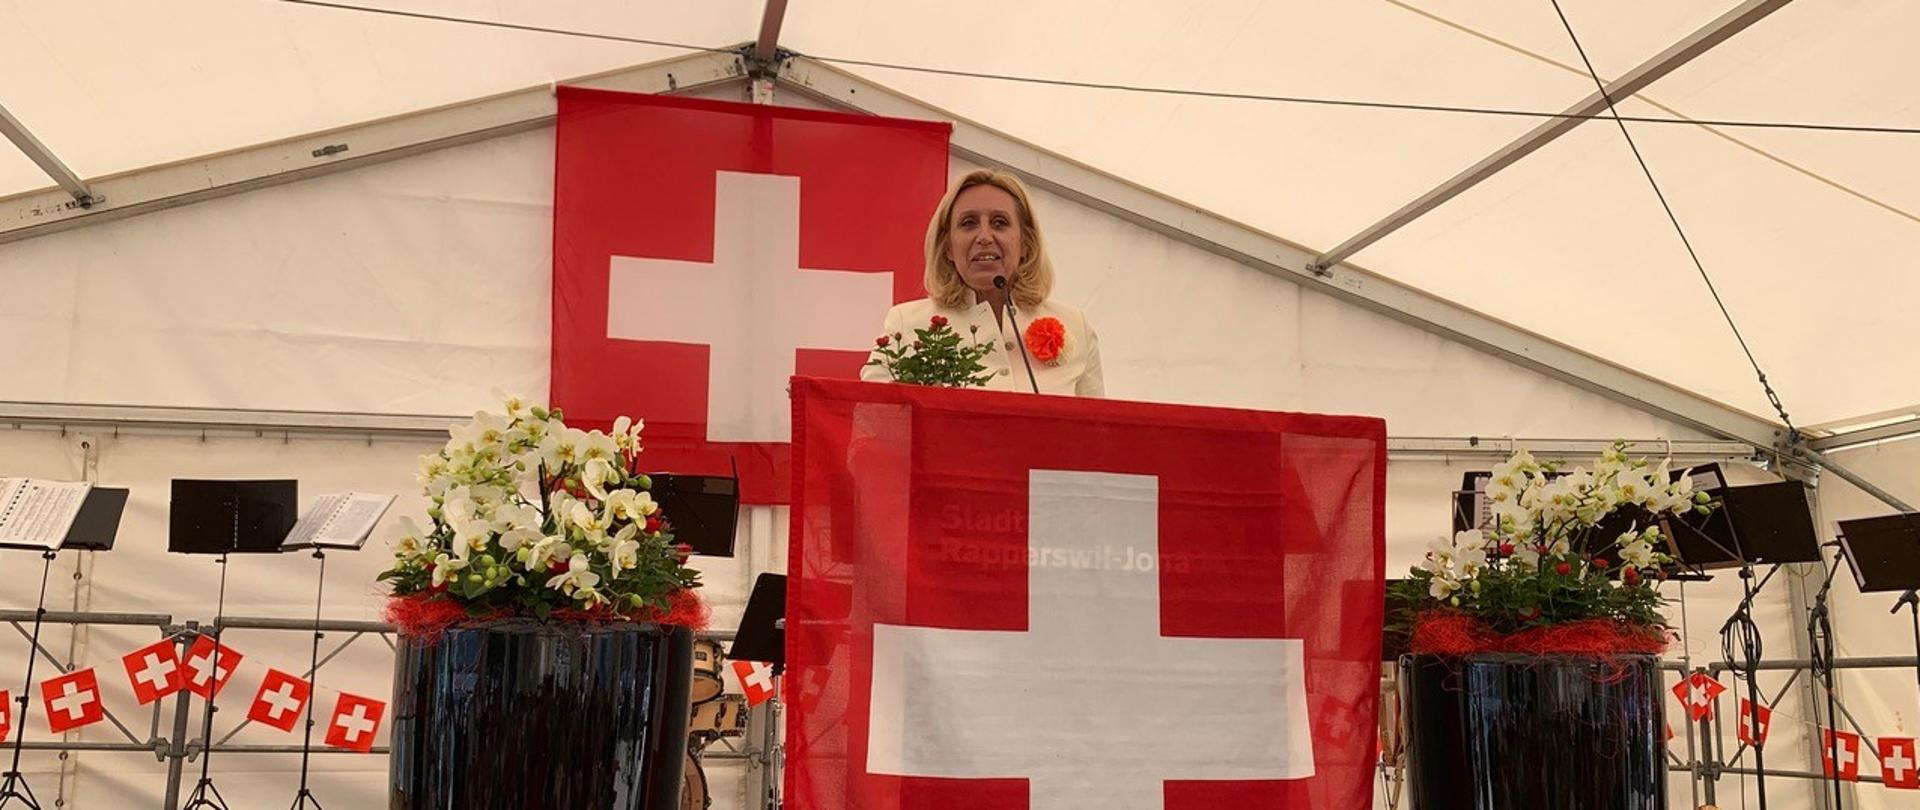 Ambasador Iwona Kozłowska przemawia podczas oficjalnych obchodów szwajcarskiego Święta Narodowego w Rapperswil-Jona (fot. Markus Arnitz/Linth24)